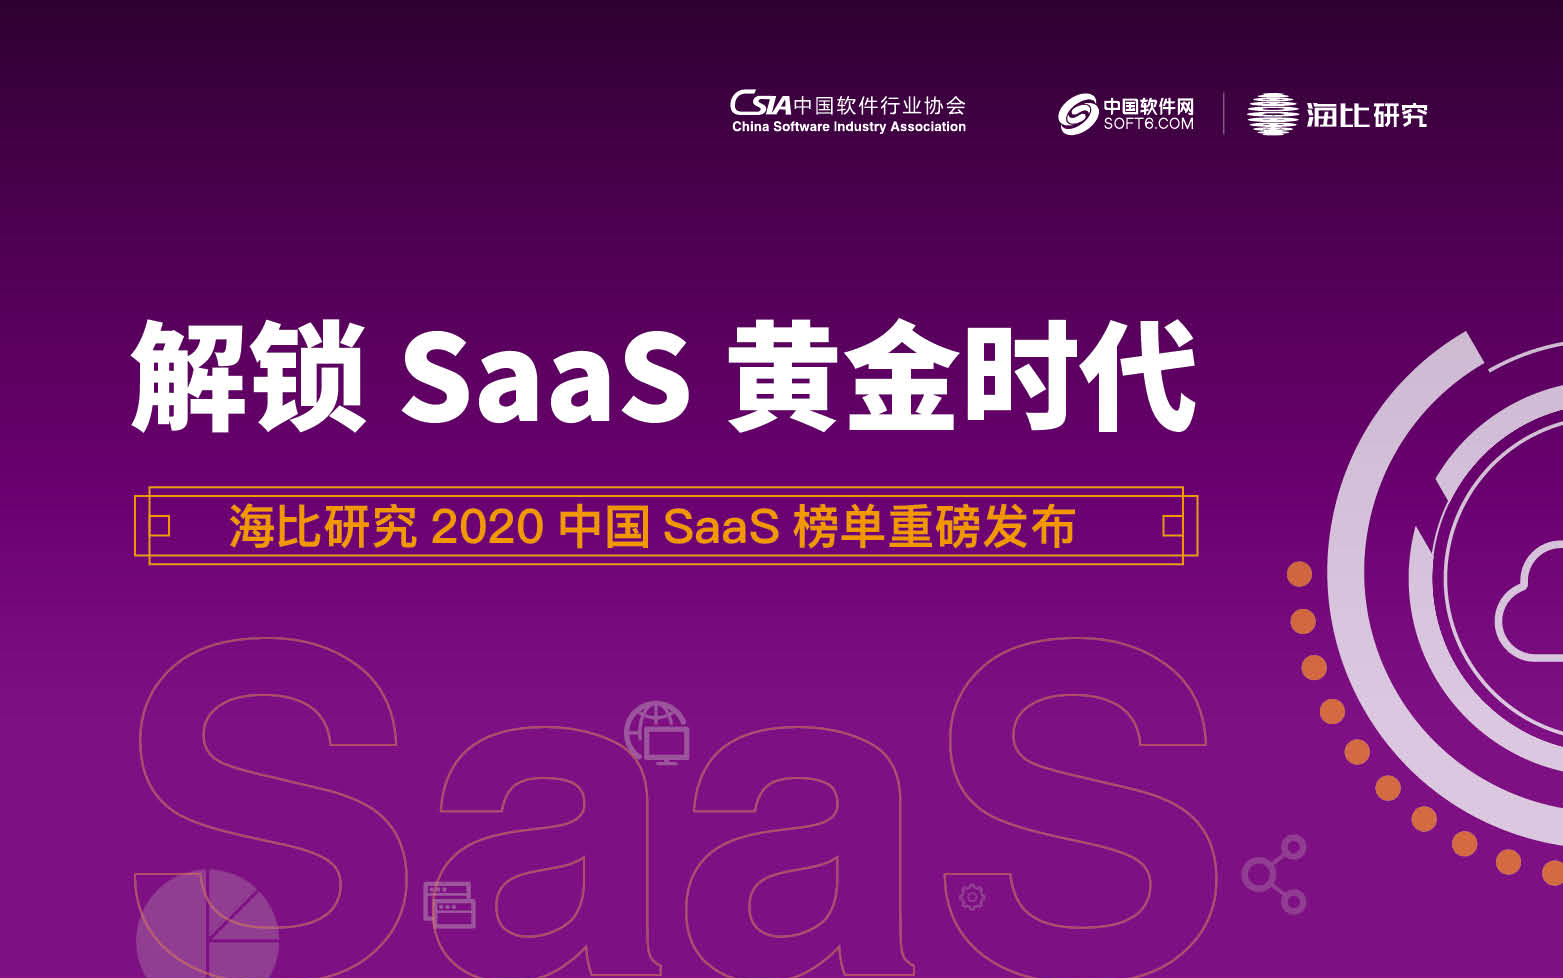 2020中国SaaS市场报告出炉 微盟荣膺“SaaS影响力企业”大奖